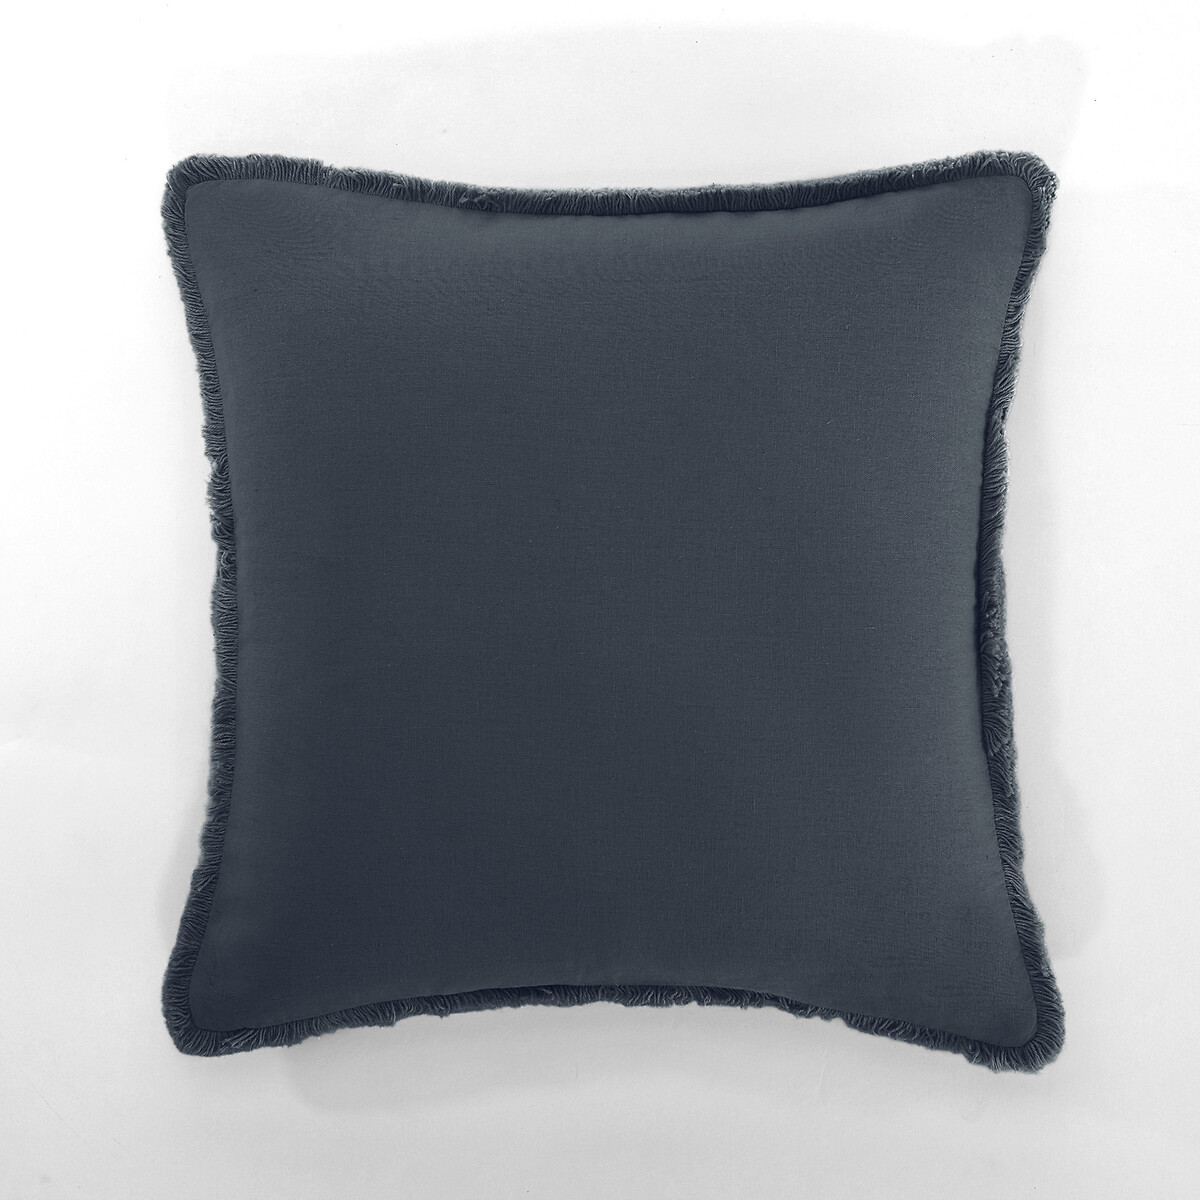 чехол на подушку raoul 40 x 40 см бежевый Чехол на подушку из льнавискозы ODORIE 40 x 40 см синий